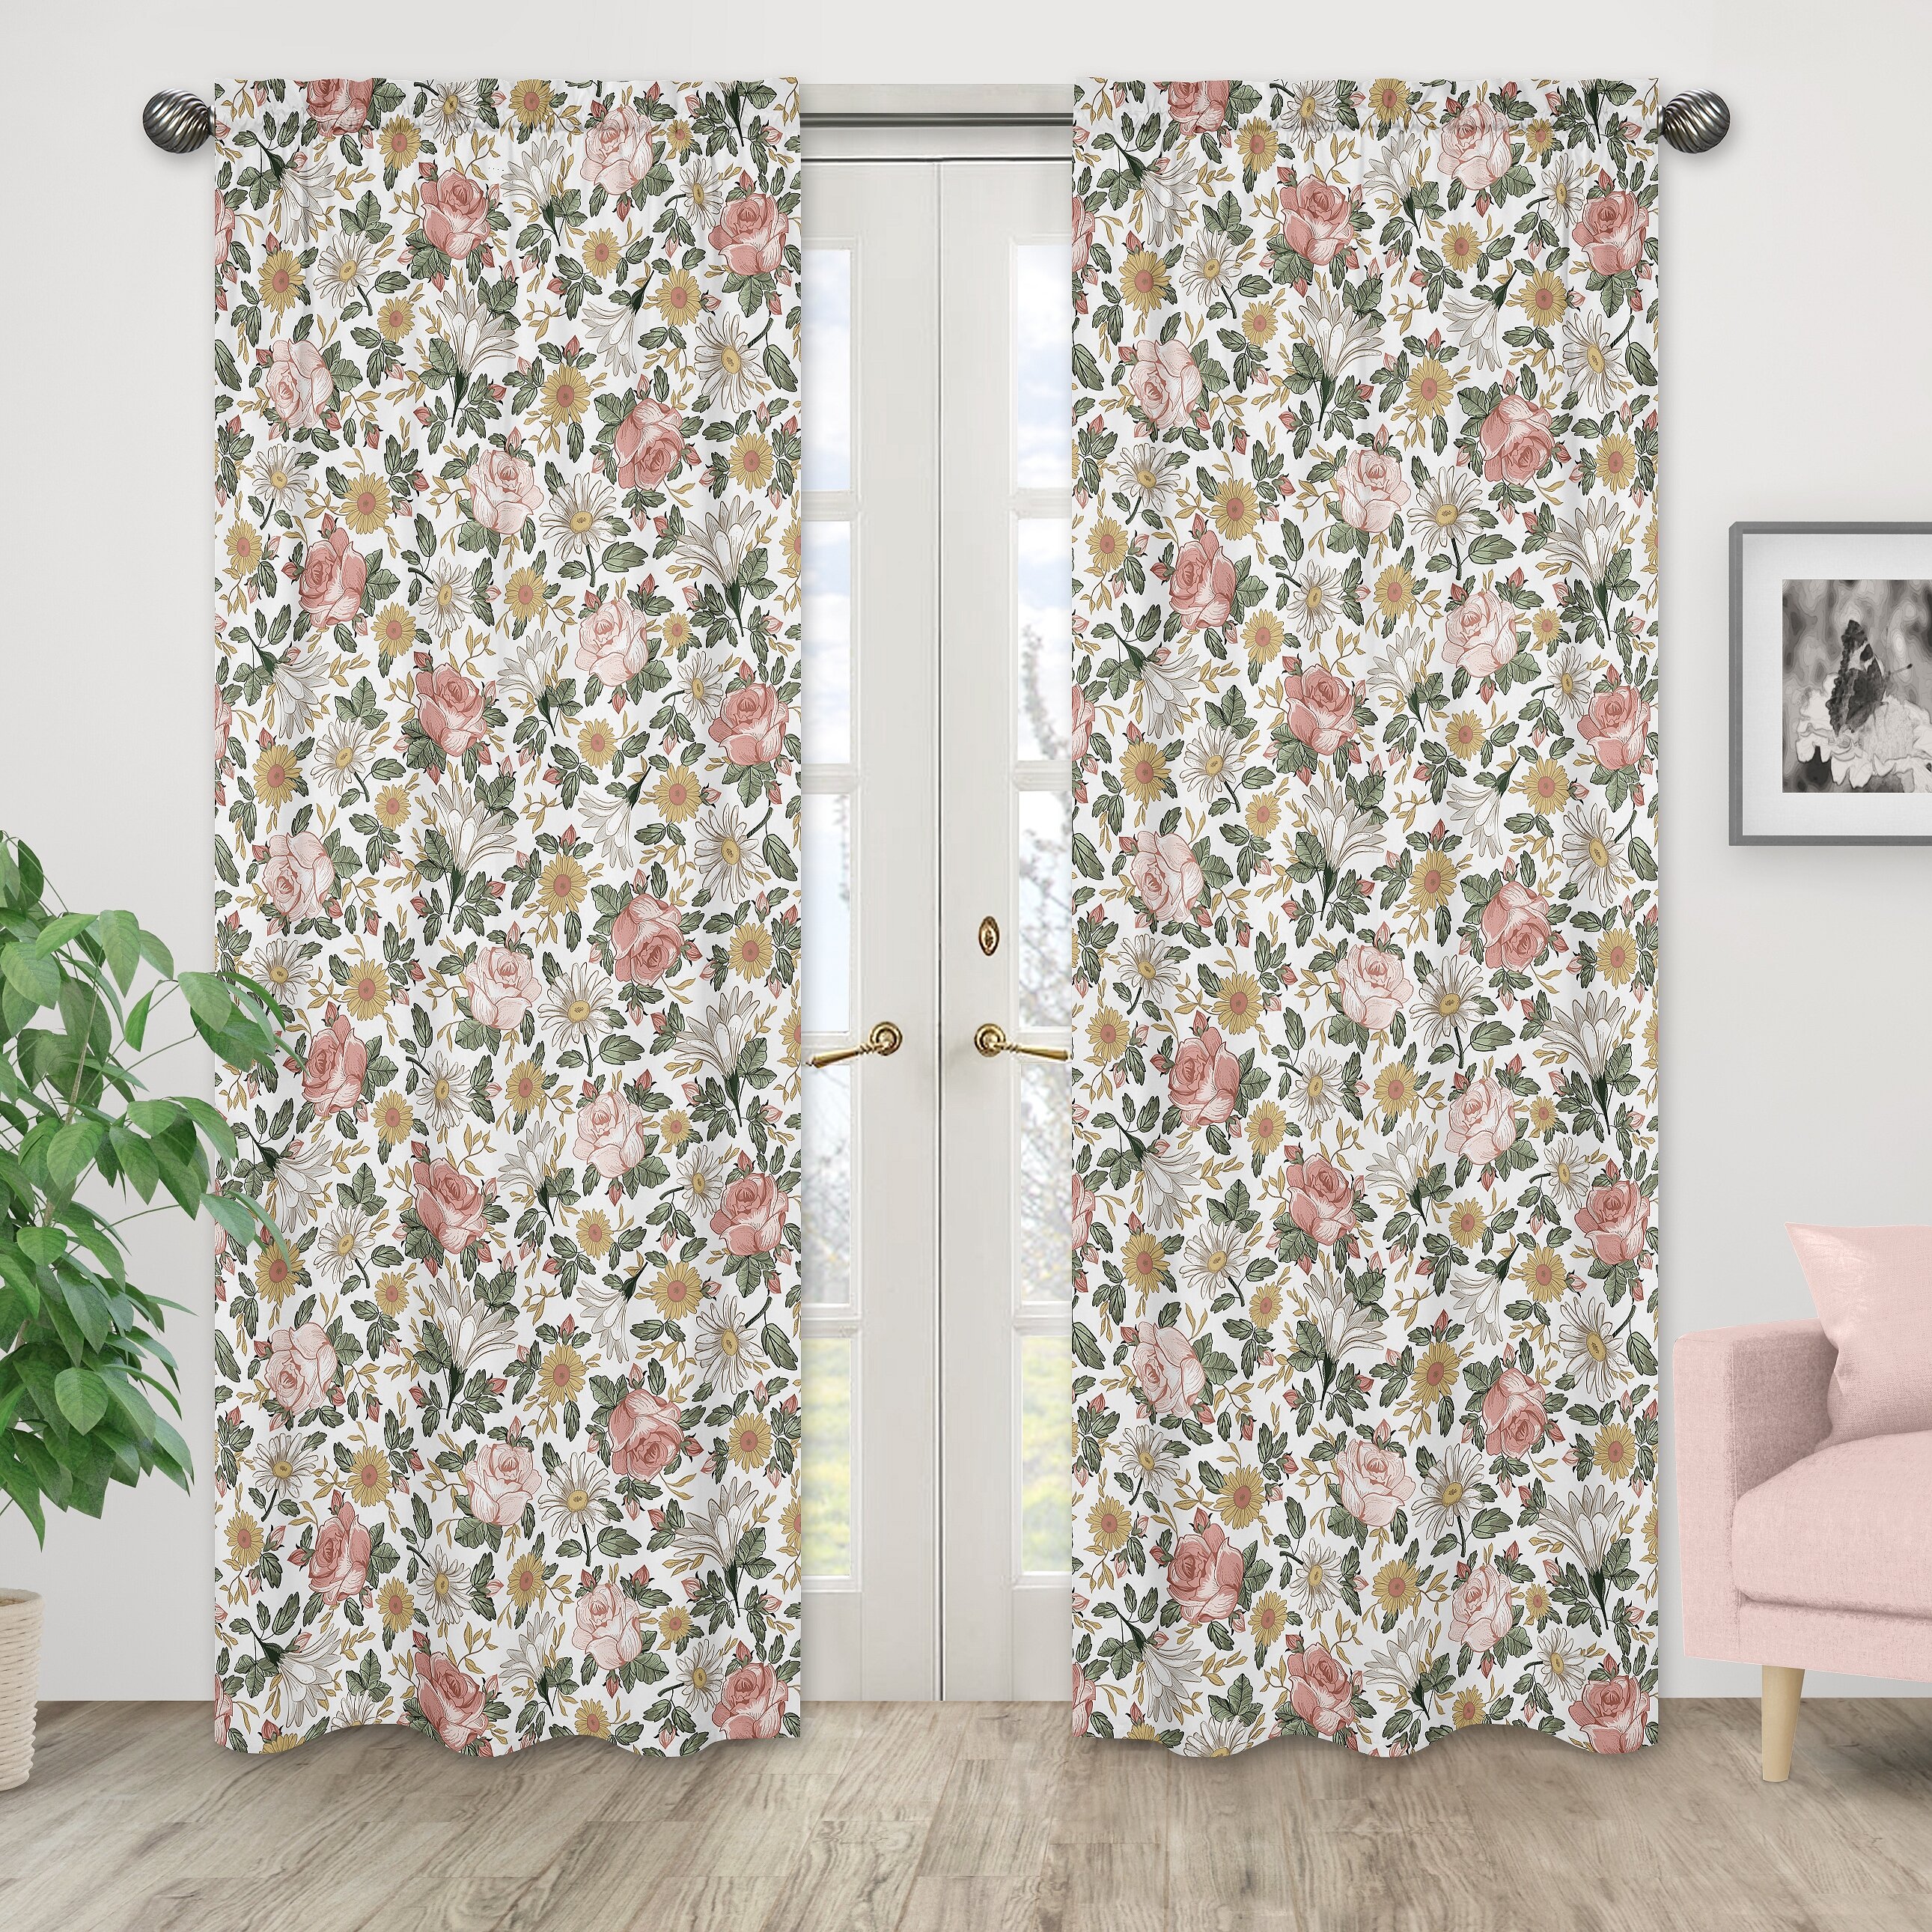 https://assets.wfcdn.com/im/41221514/compr-r85/1304/130432395/vintage-floral-semi-sheer-rod-pocket-curtain-panels.jpg